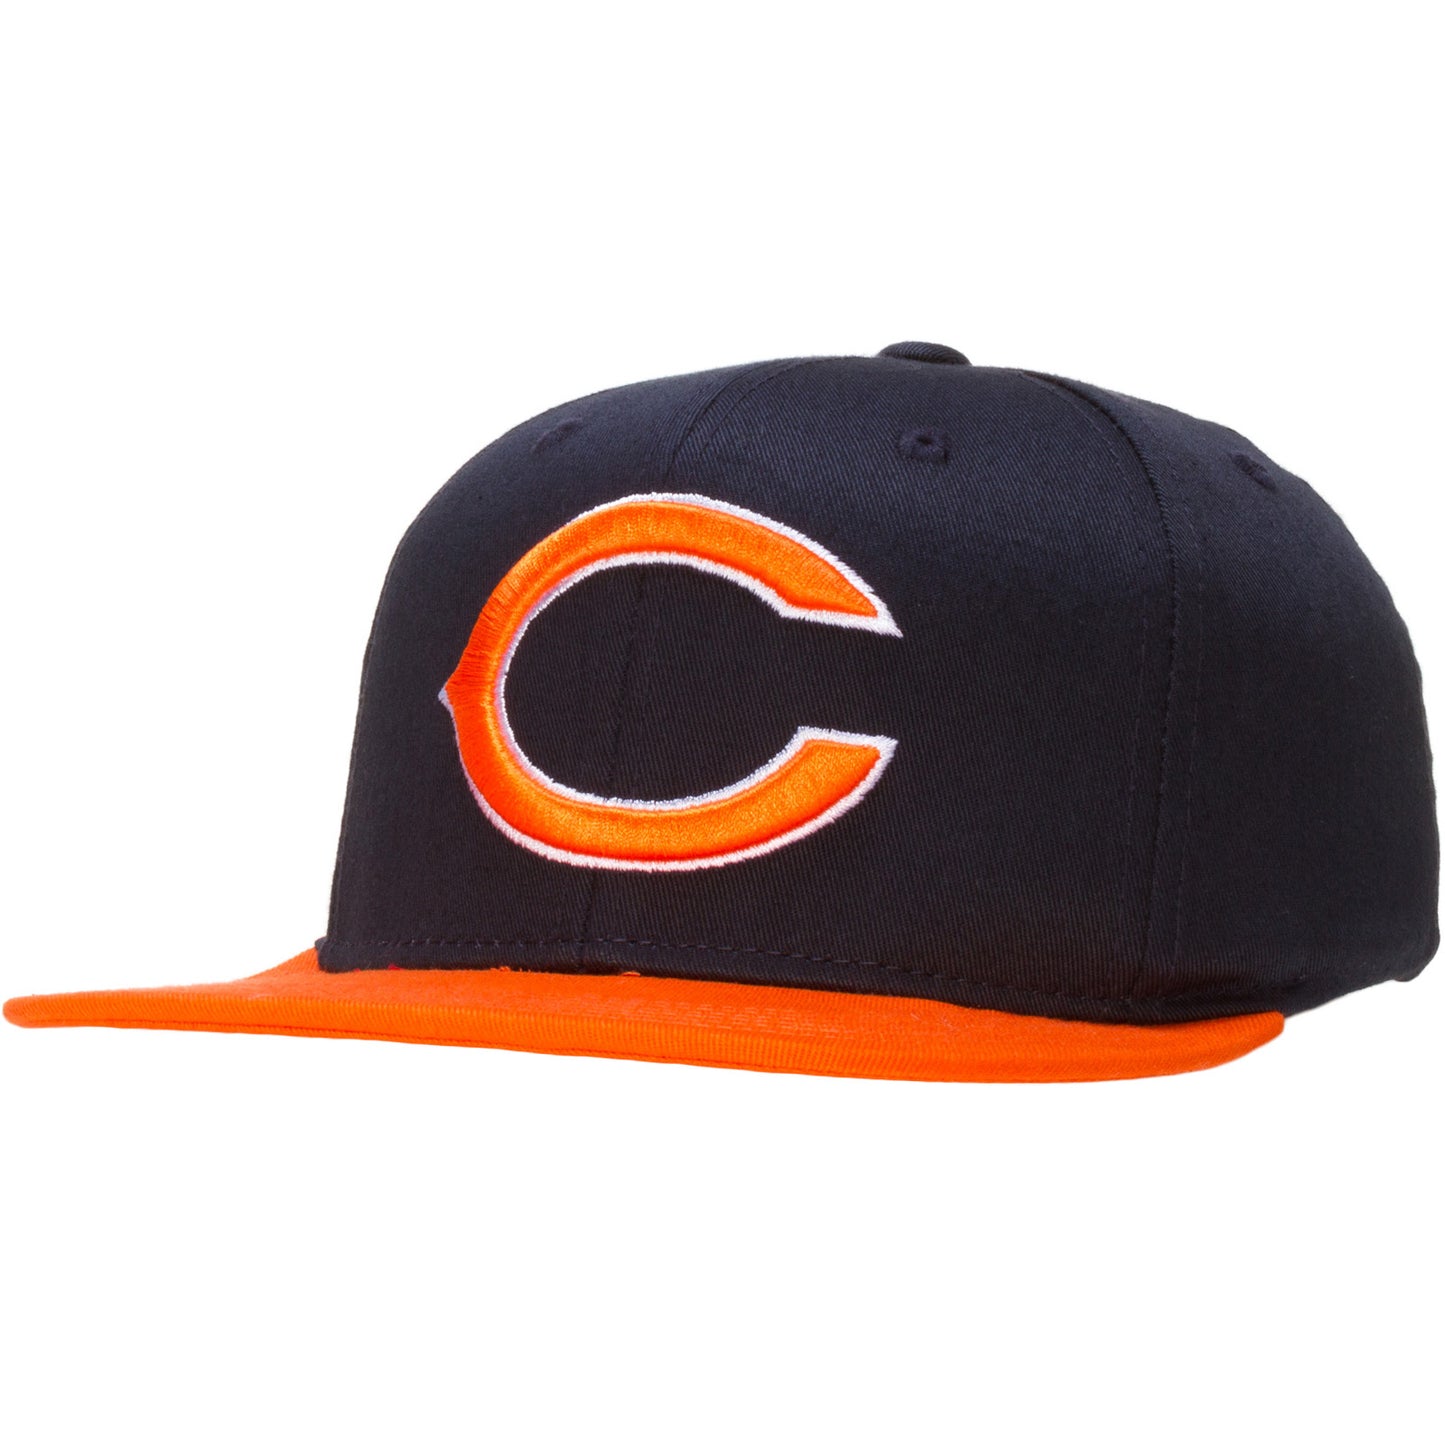 Chicago Bears Youth Navy and Orange "C" Logo Snapback